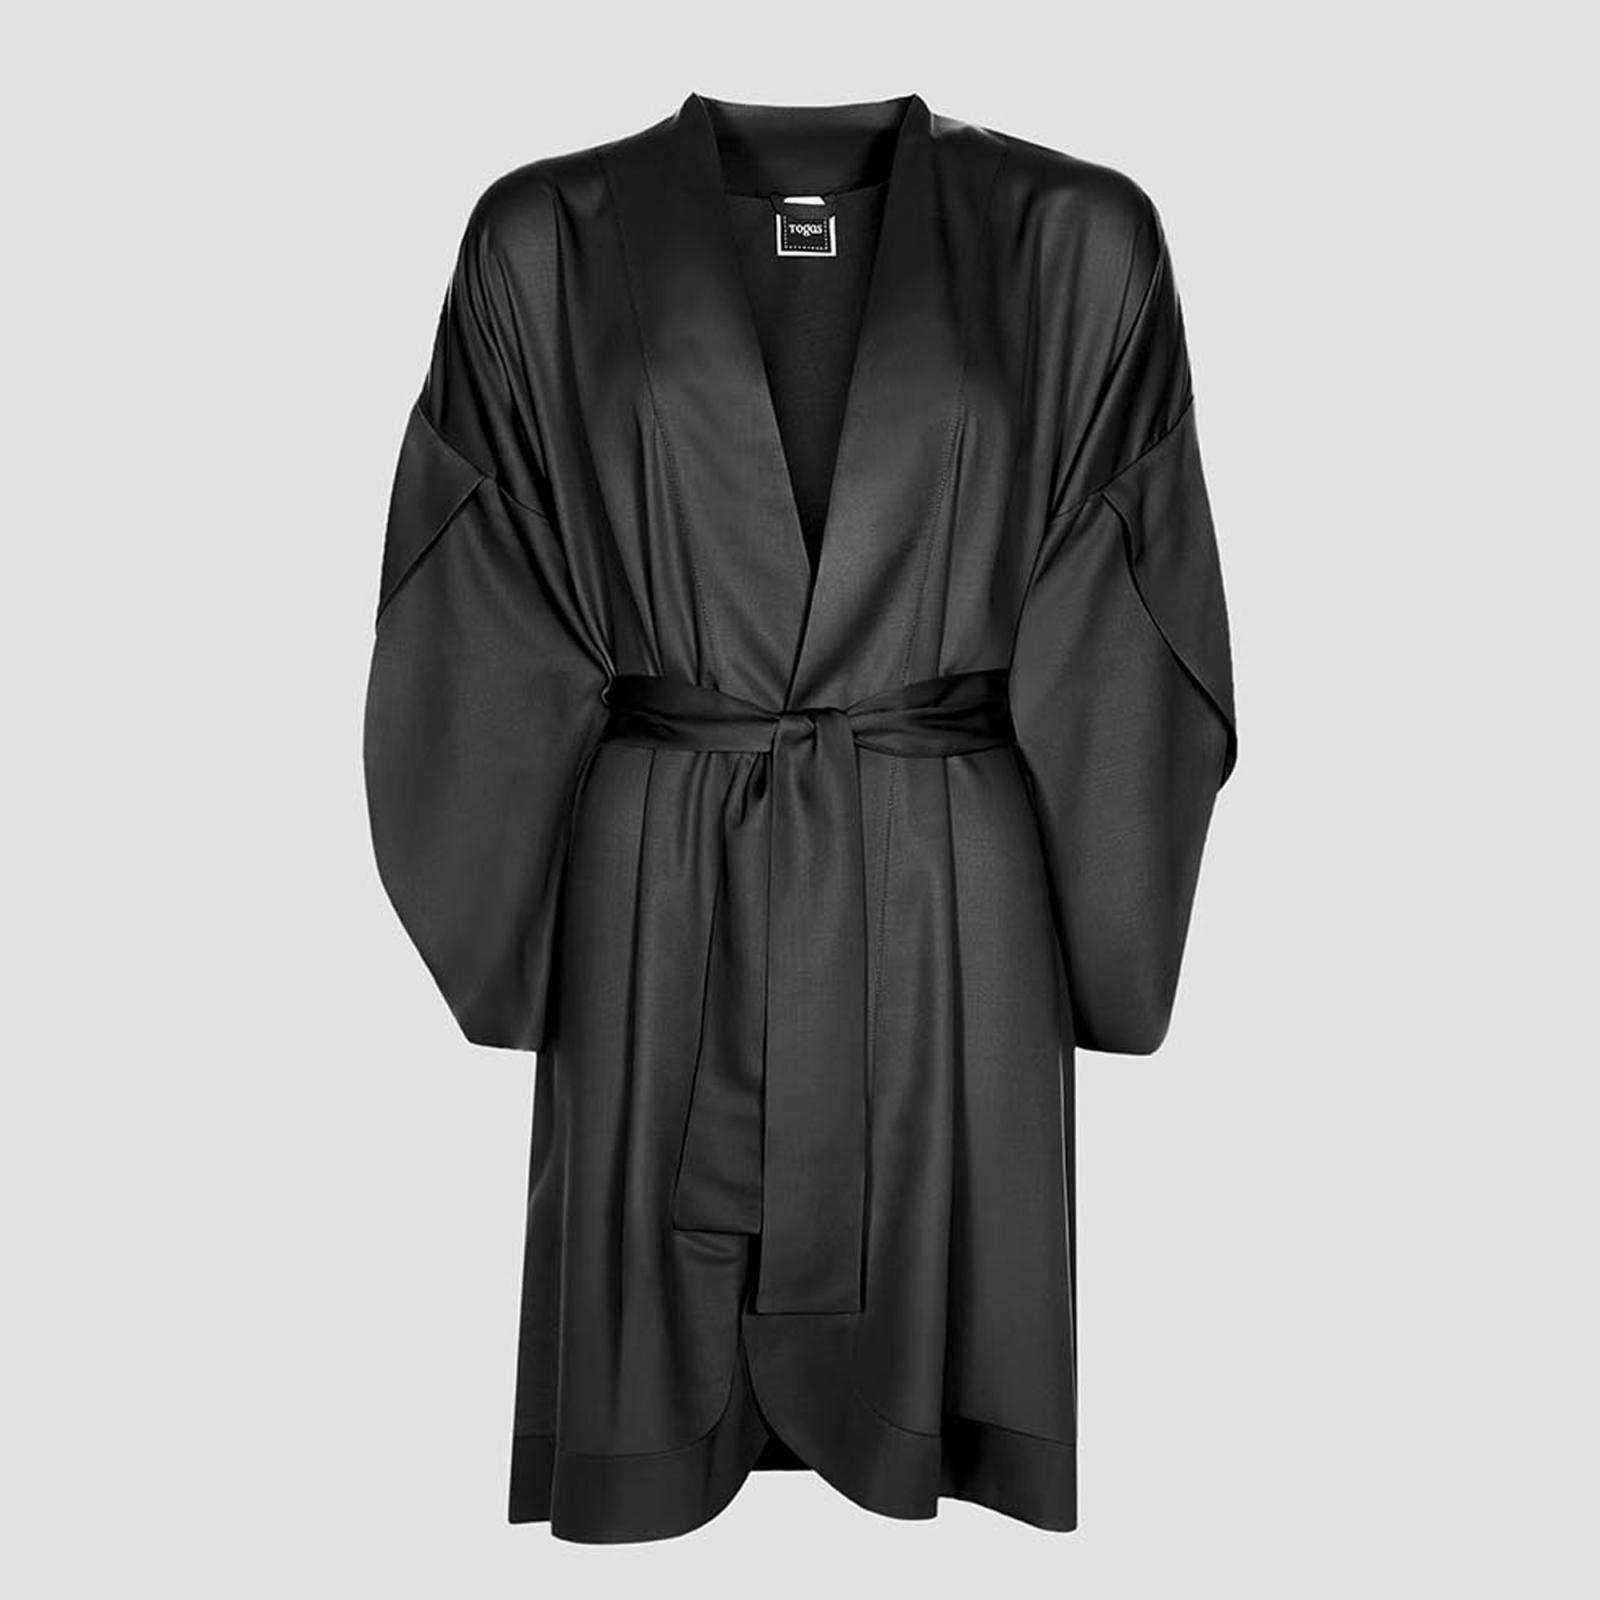 Халат-кимоно короткое Togas Наоми чёрное XXL (52) платье кимоно